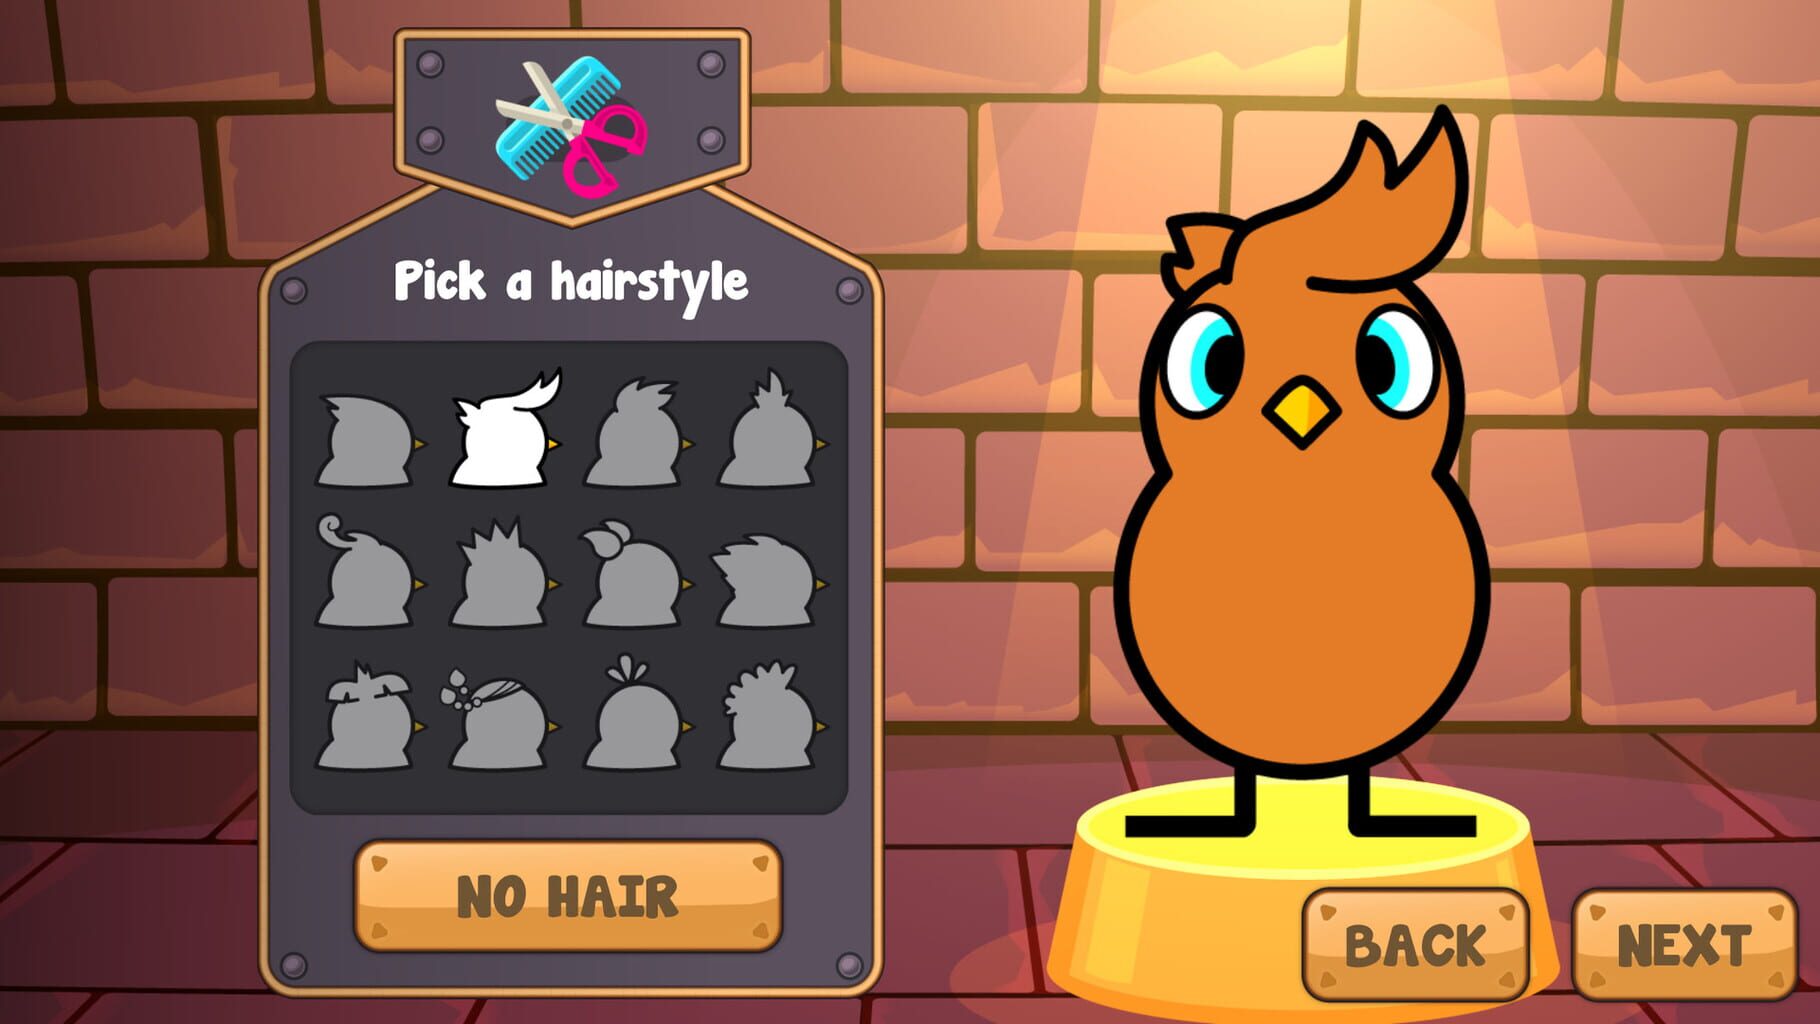 Duck Life: Battle screenshot